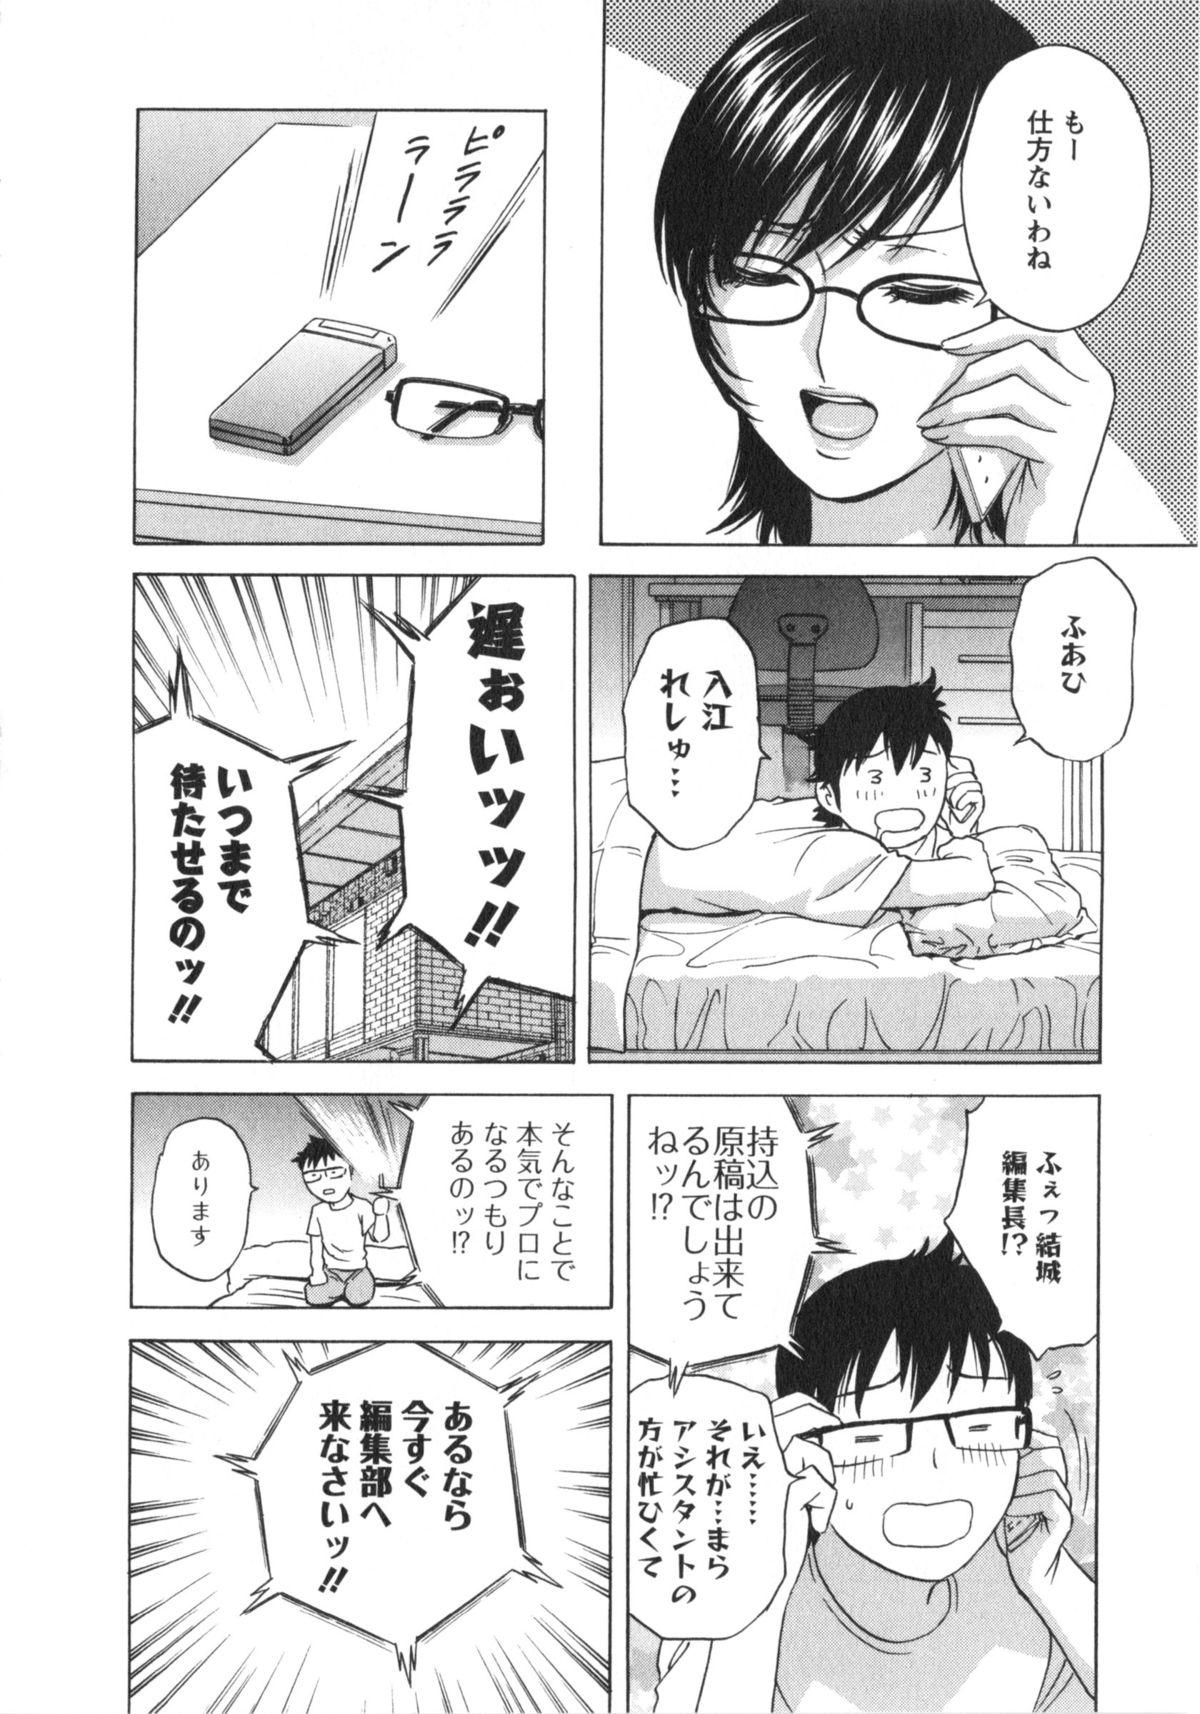 Manga no youna Hitozuma to no Hibi - Days with Married Women such as Comics. 156